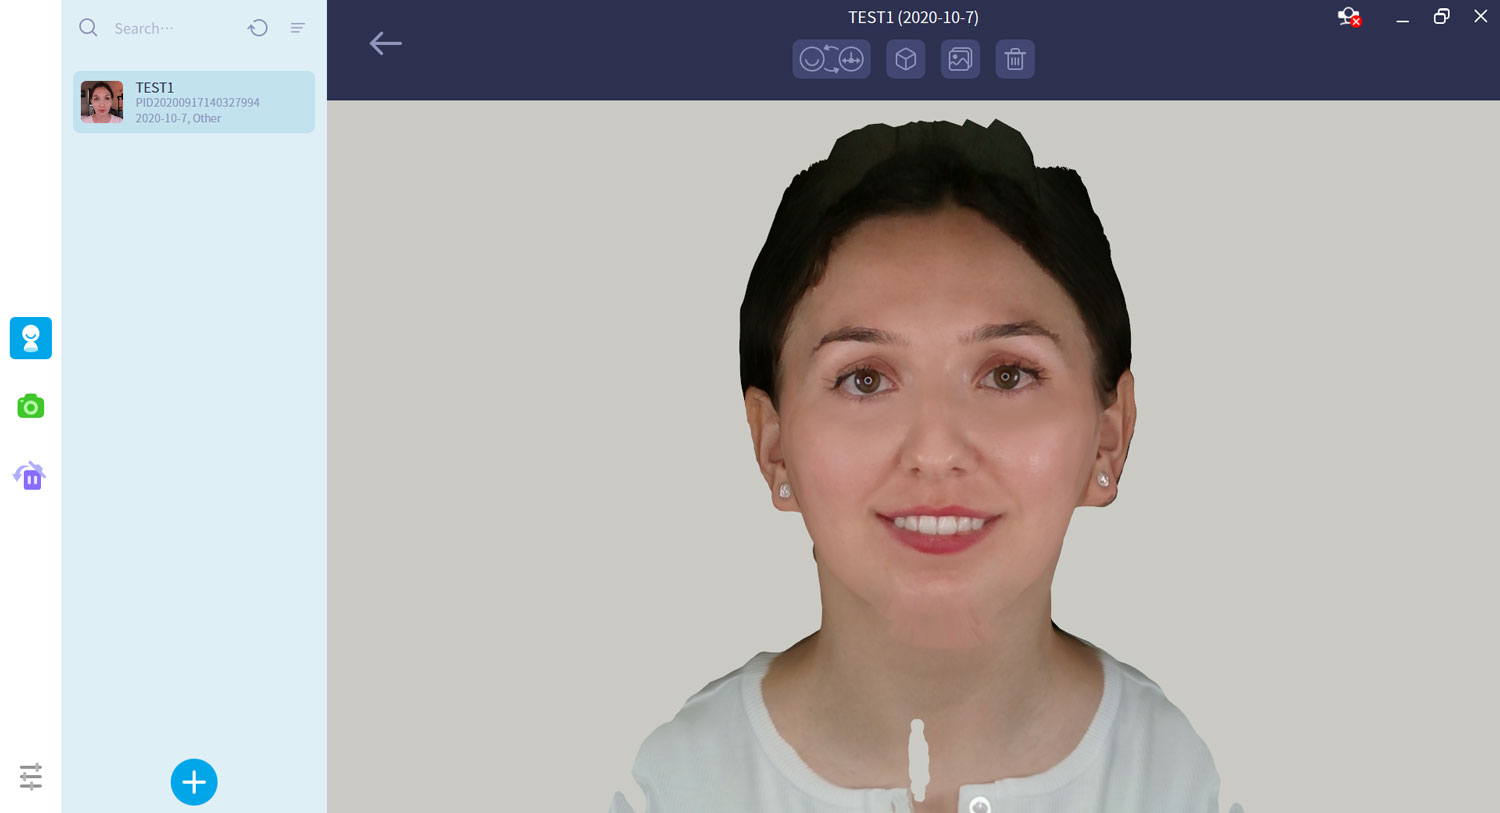 Podgląd ekranu po zeskanowaniu twarzy pacjentki